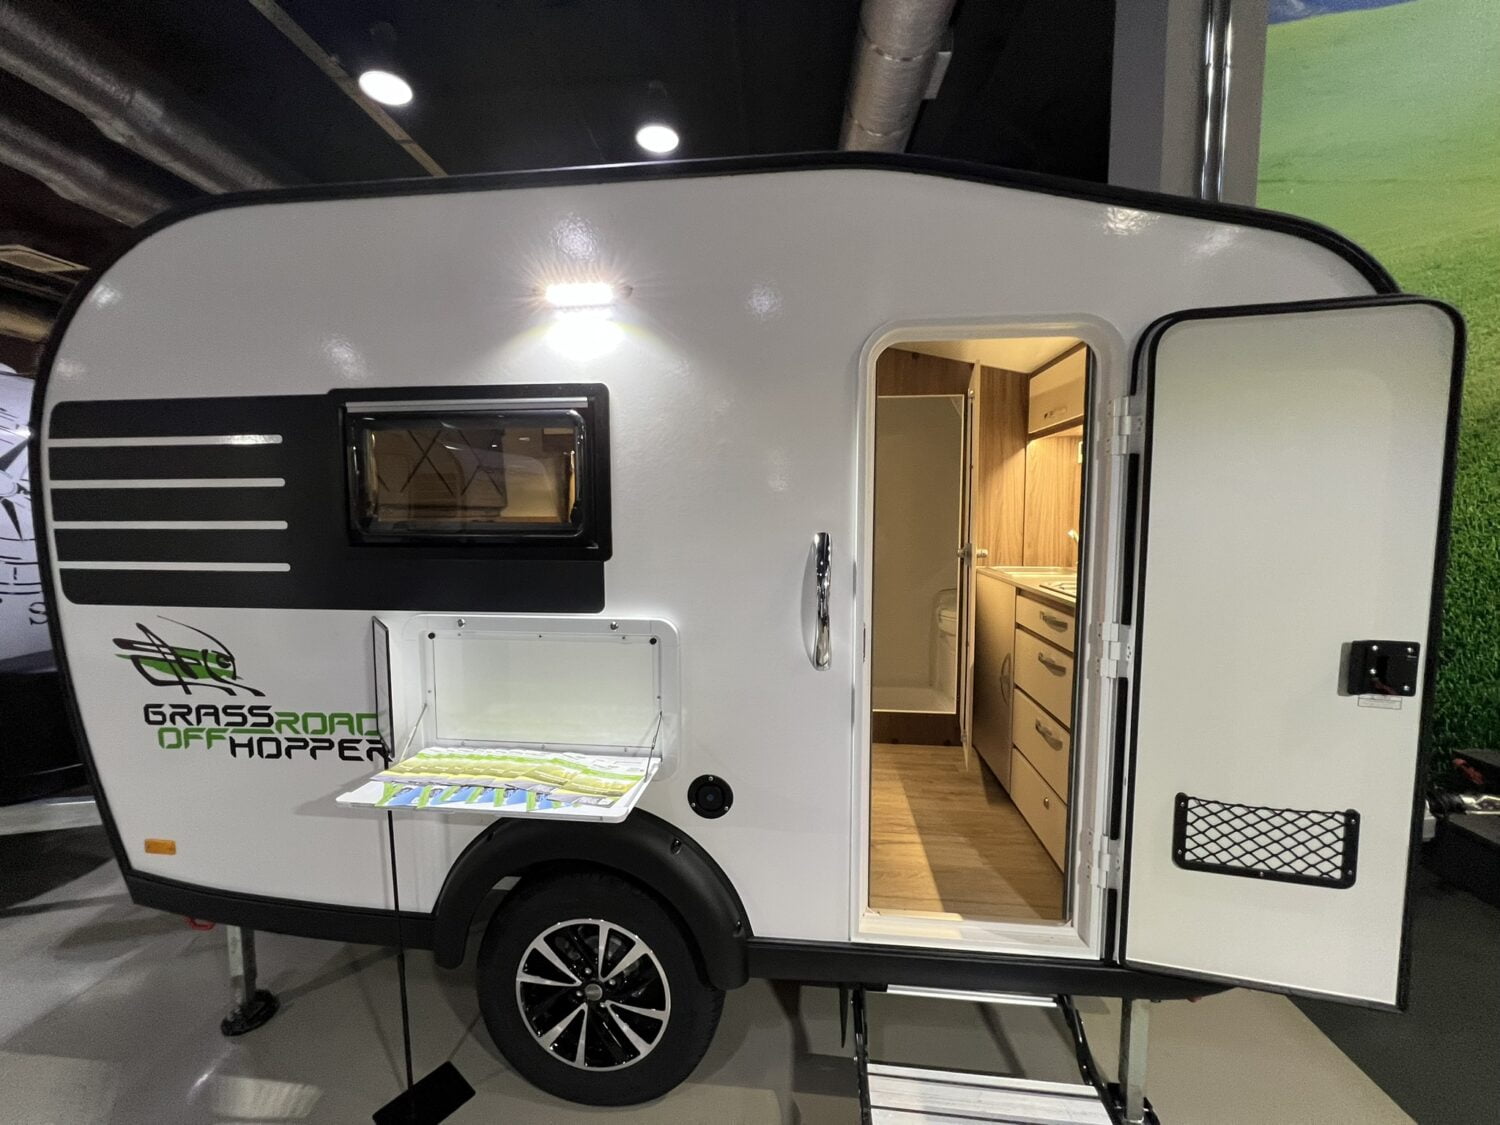 Grasshopper 330ТMГ: всё о мобильном доме на колёсах для путешествий и отдыха